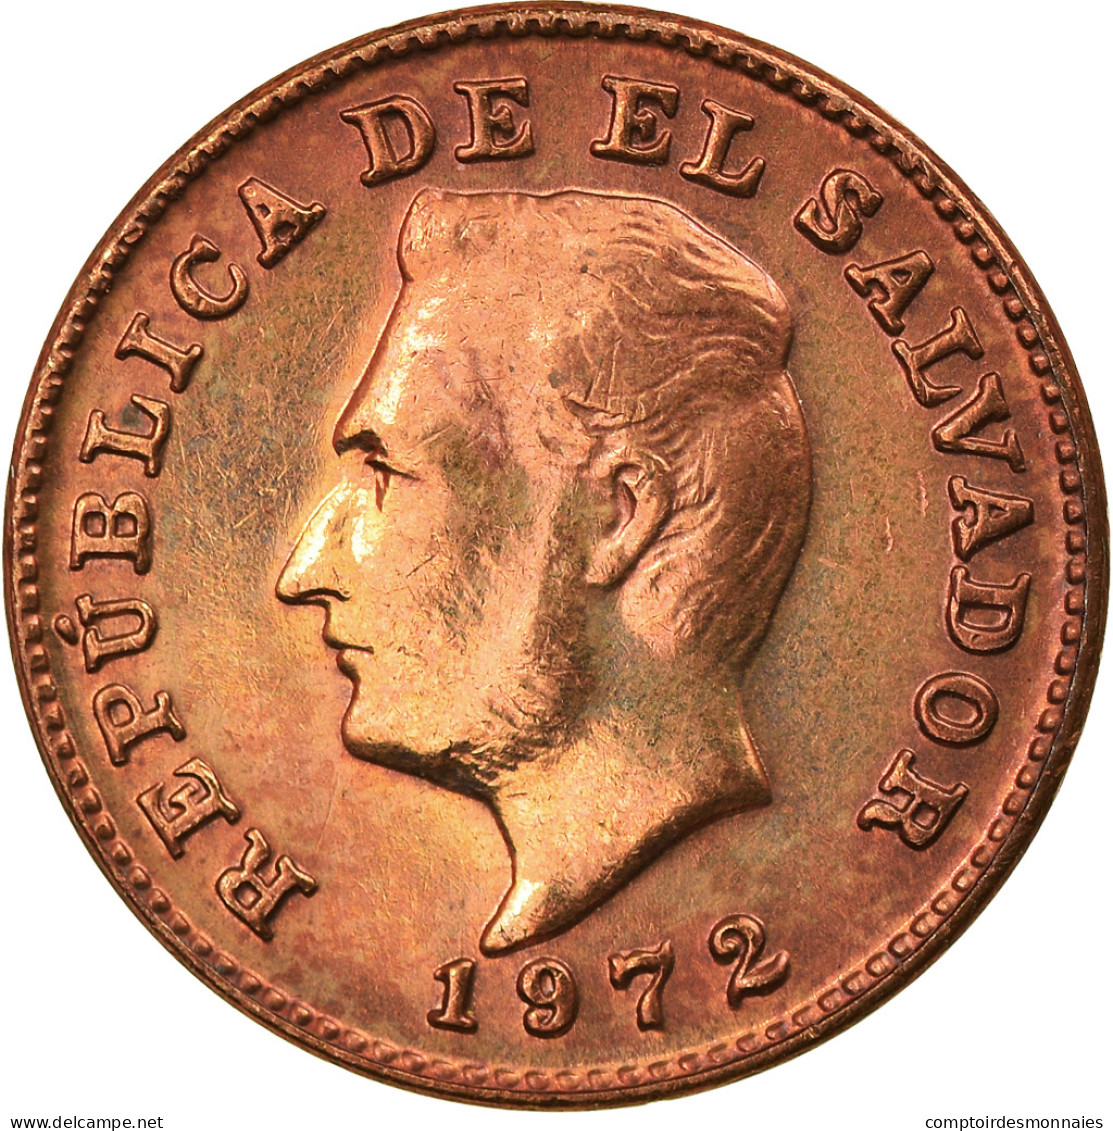 Monnaie, El Salvador, Centavo, 1972, SUP+, Bronze, KM:135.1 - El Salvador